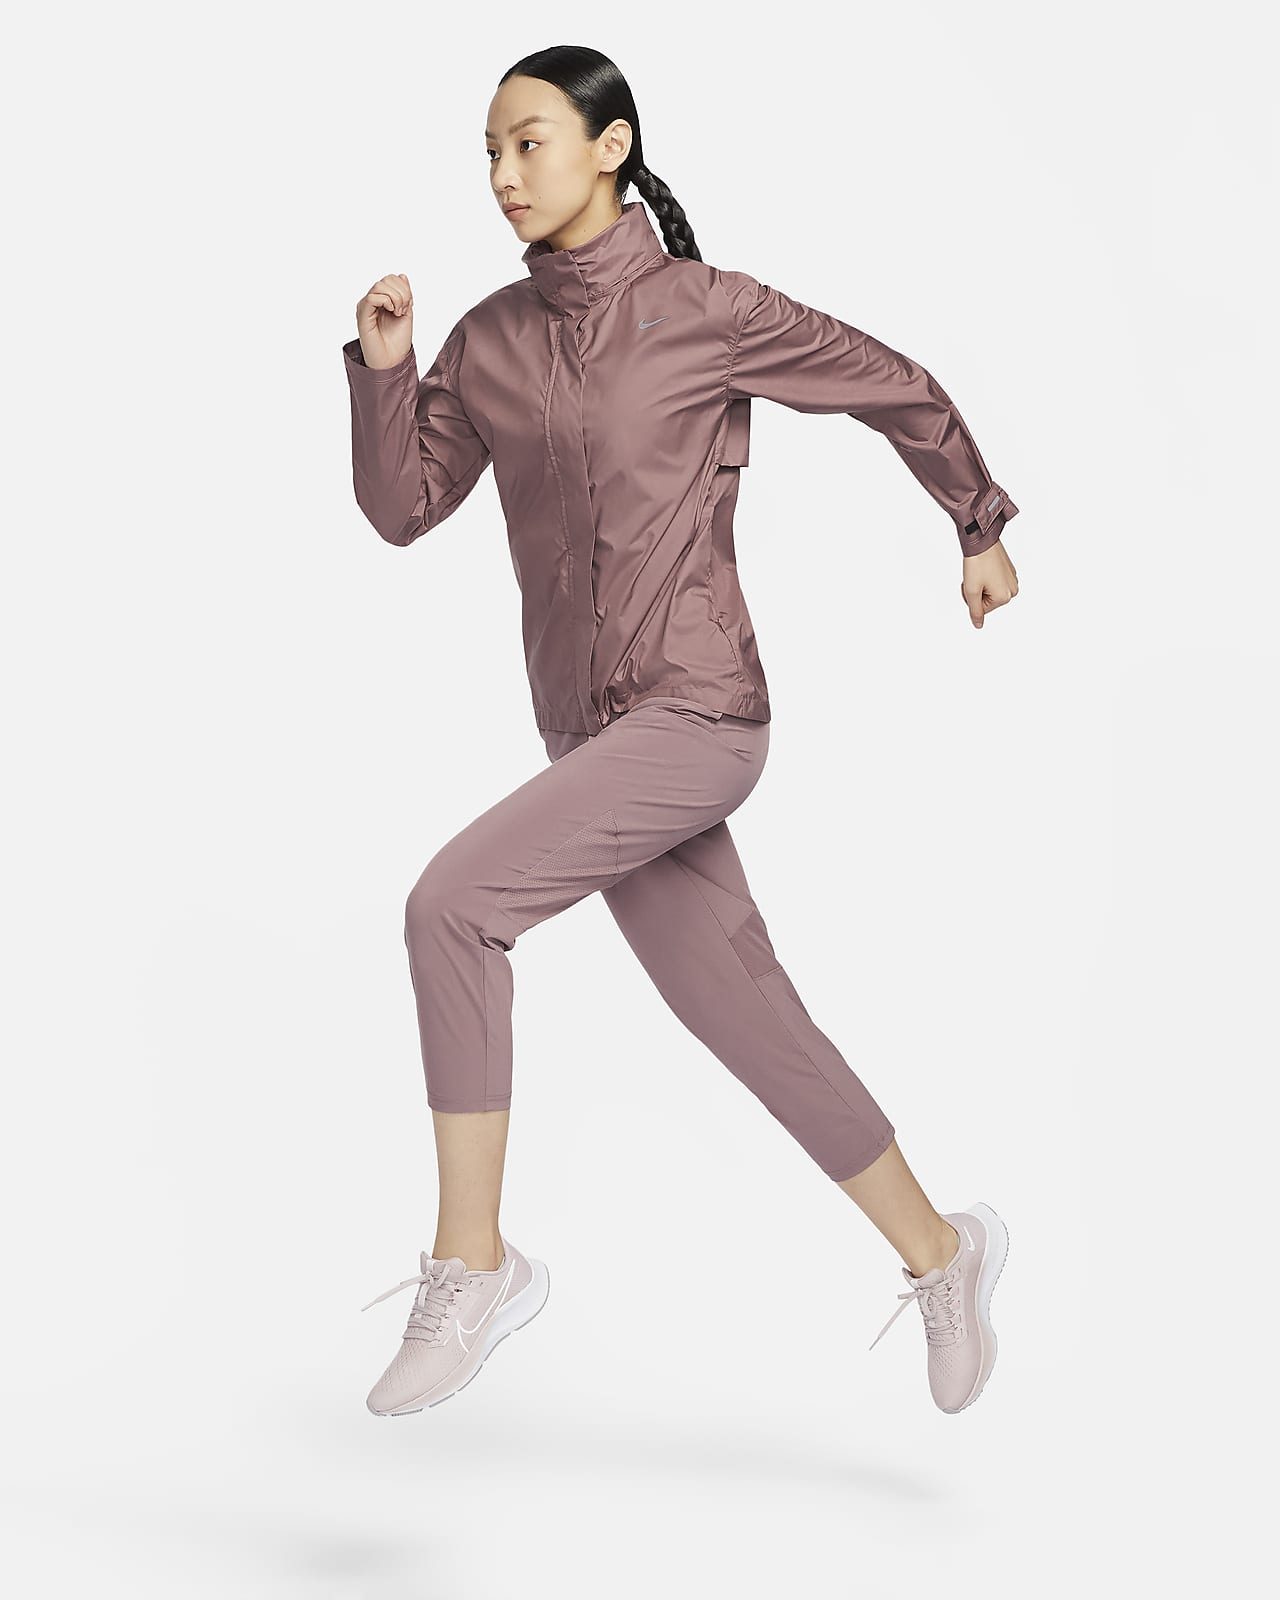 NIKE เลกกิ้งผู้หญิงสำหรับวิ่ง ขาลอยเอวปานกลาง รุ่น Fast CZ9239-655